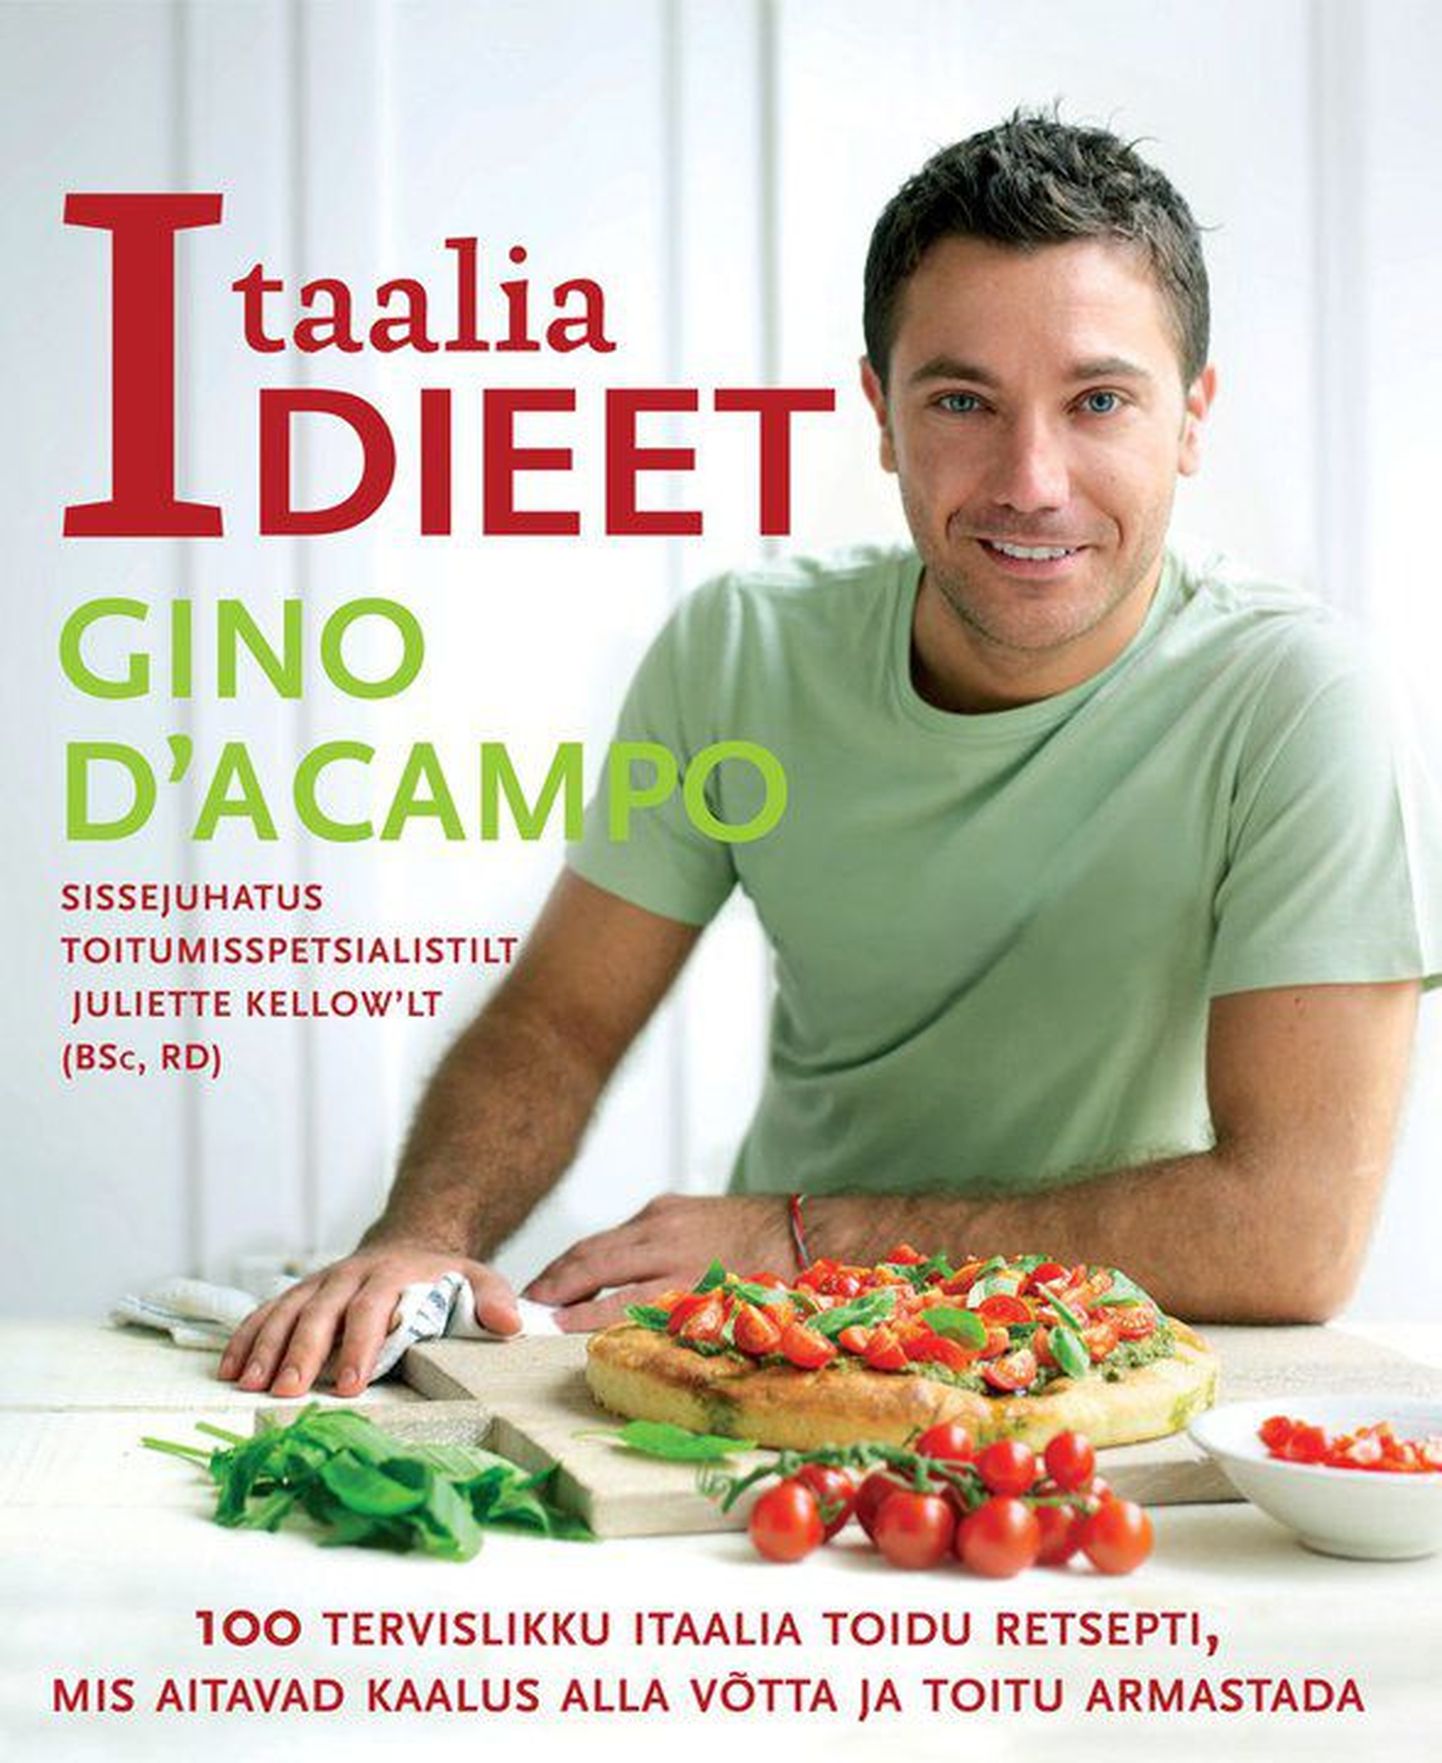 Gino D'Acampo «Itaalia dieet».